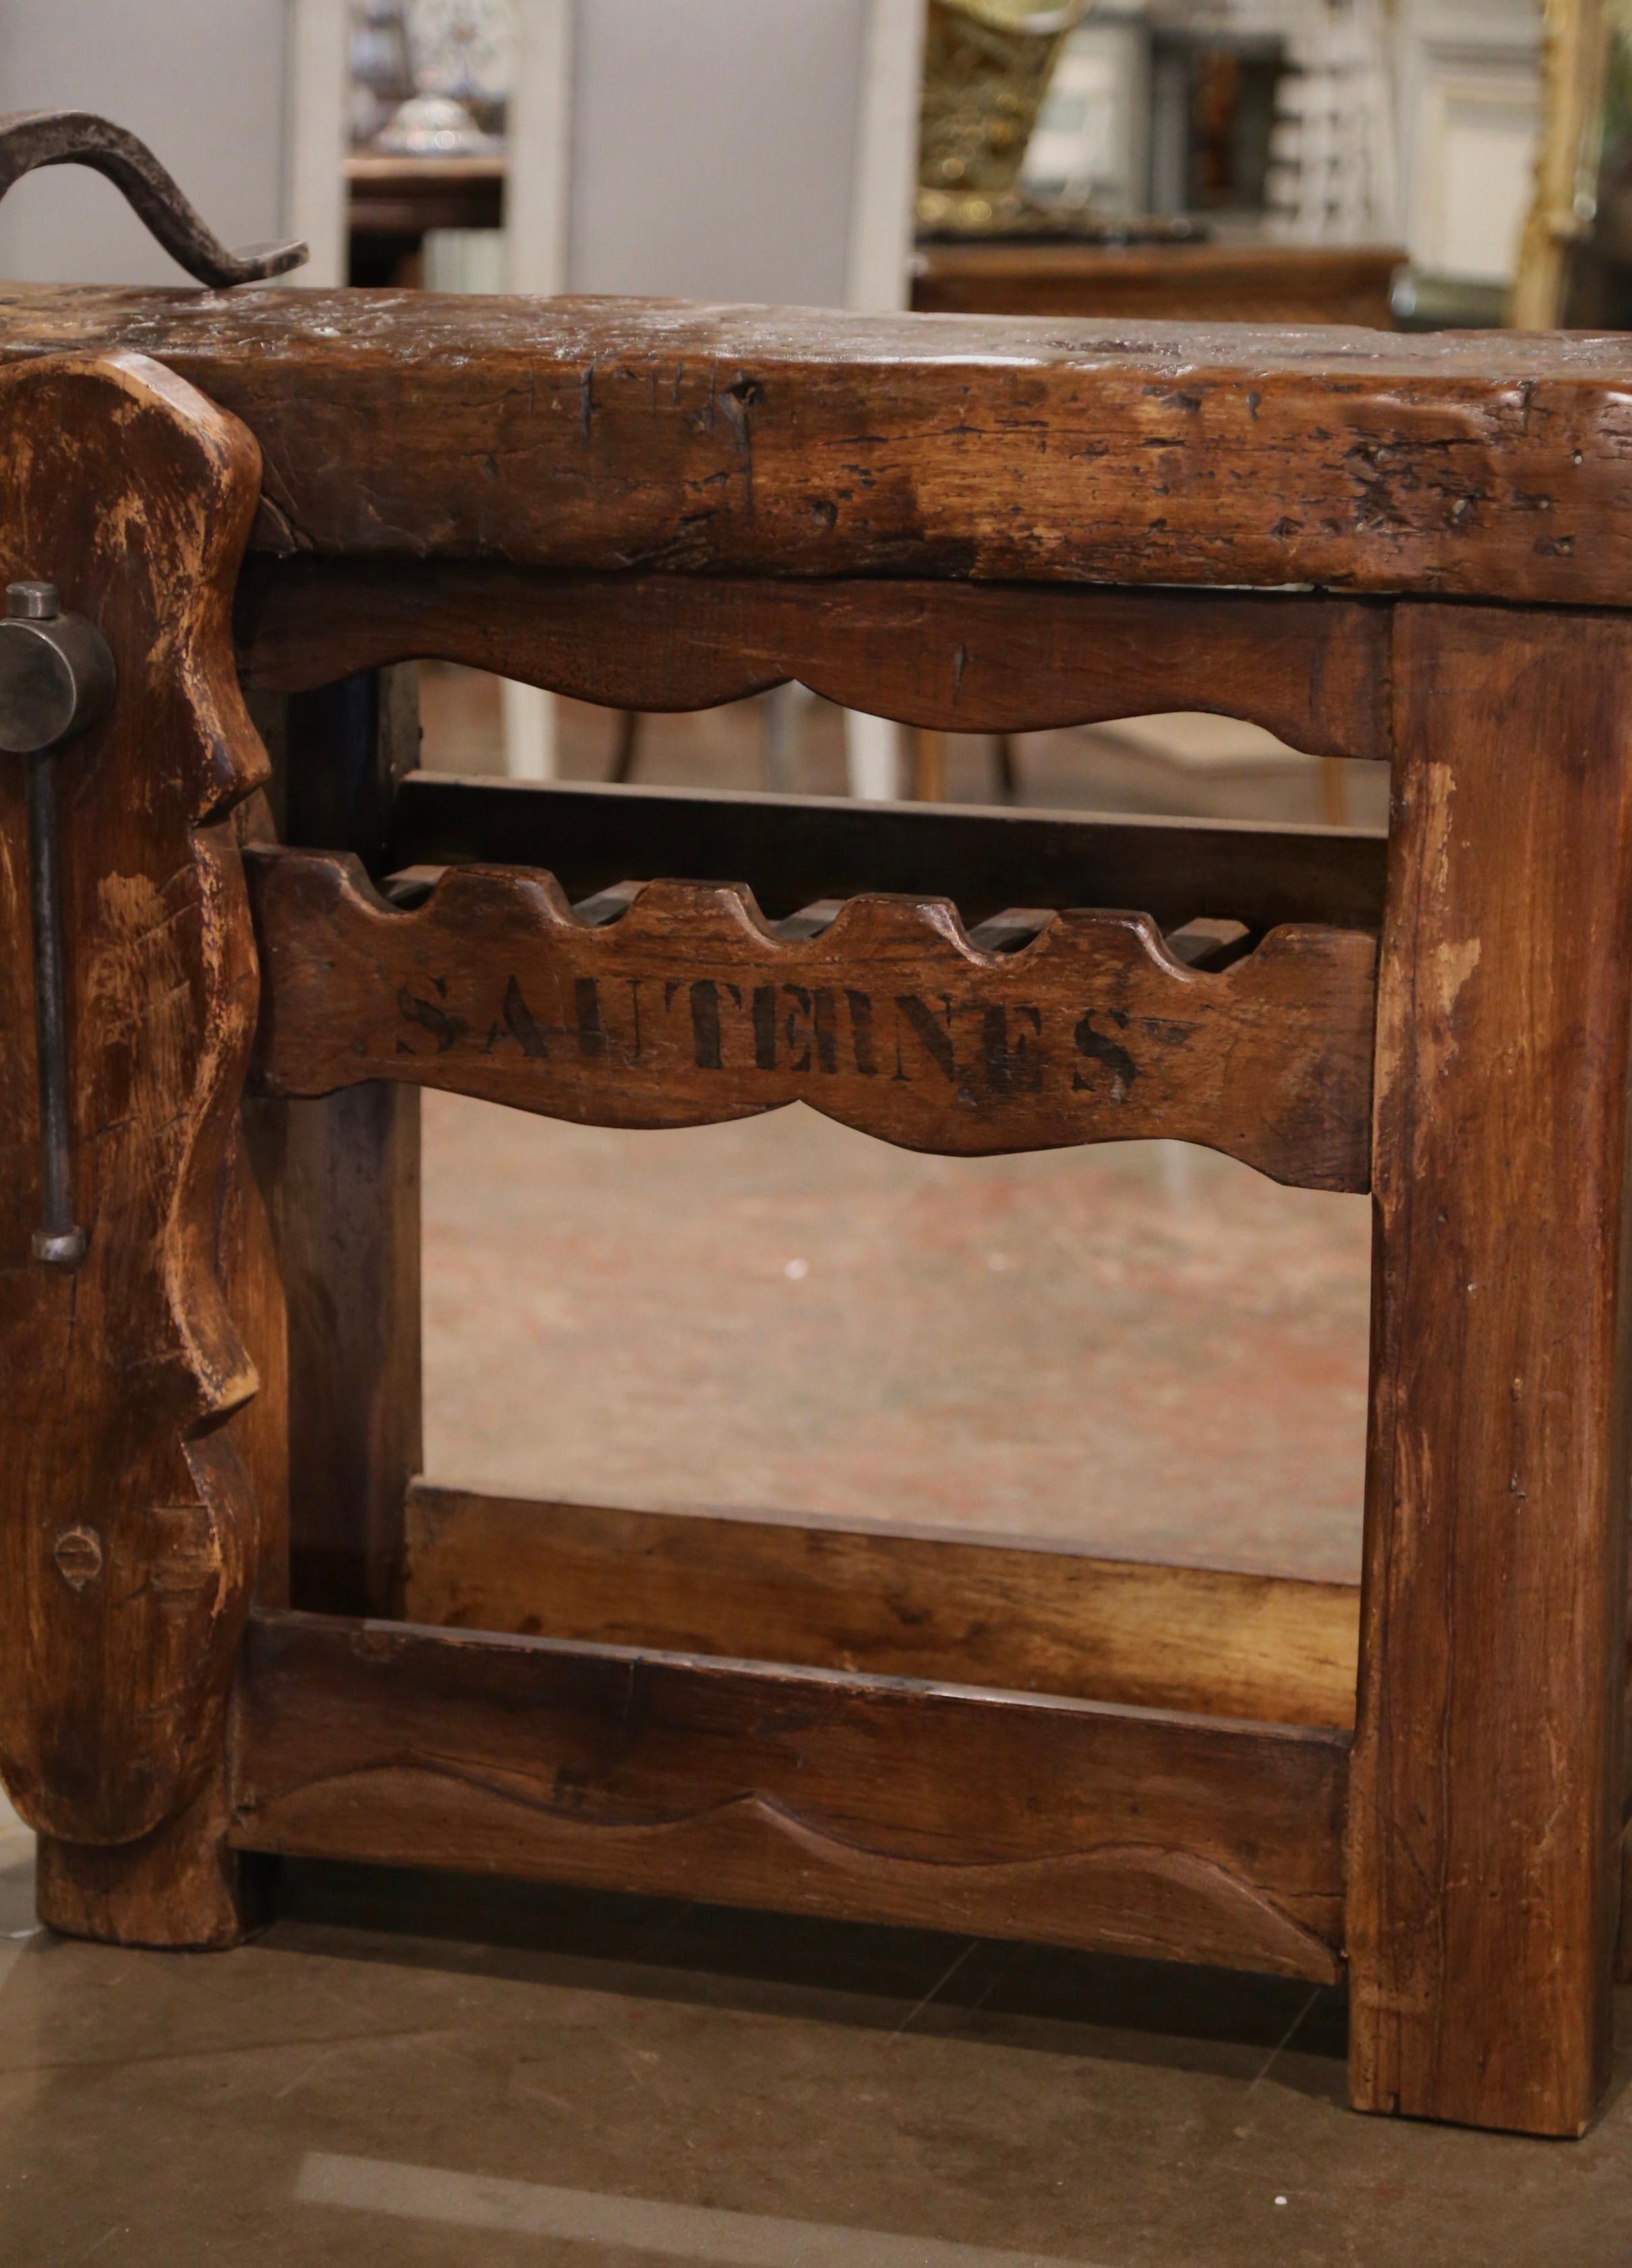 Dieser antike Tisch wurde um 1880 in der französischen Poitou-Region hergestellt. Das rustikale, rustikale Stück aus Eiche, das auf der Vorderseite mit dem Wort 